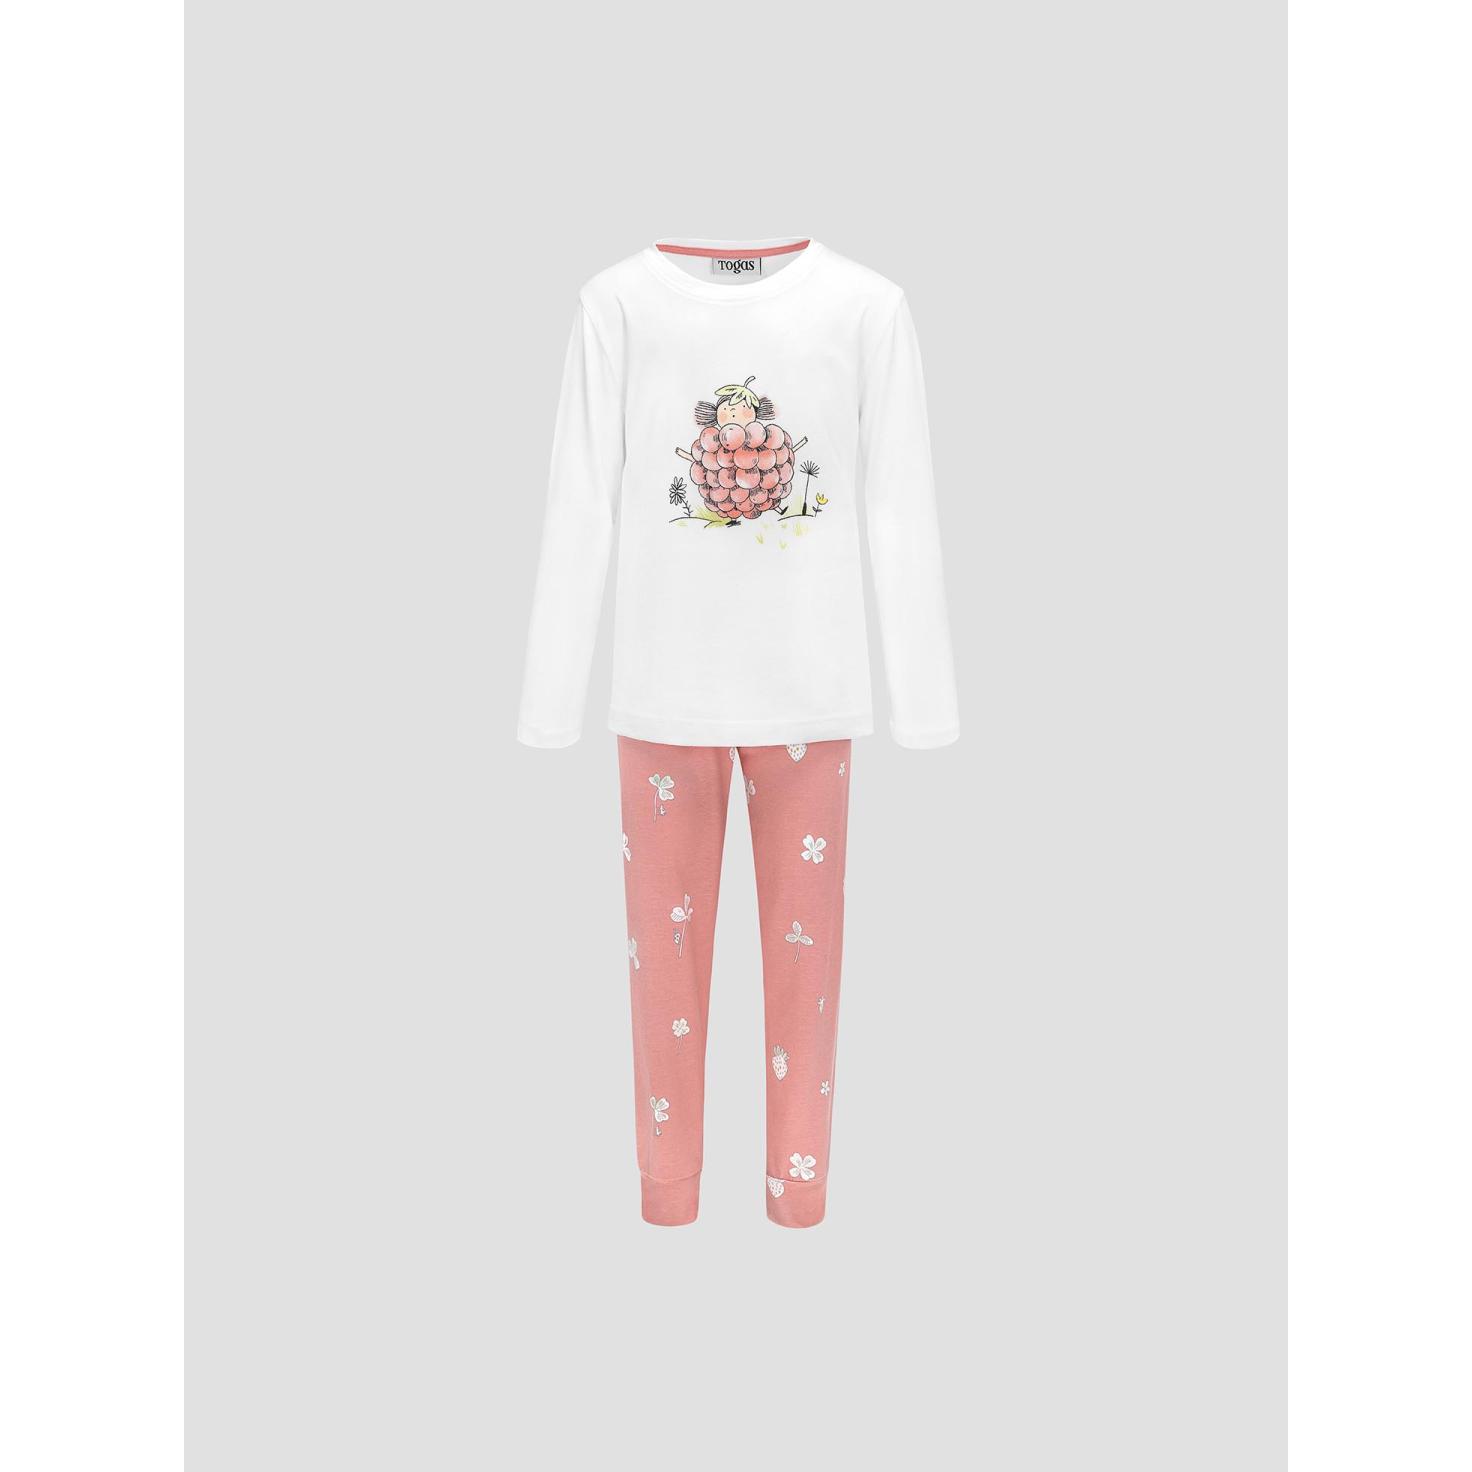 Пижама для девочек Kids by togas Стробби бело-розовый 92-98 см жен пижама с шортами инь янь белый р 54